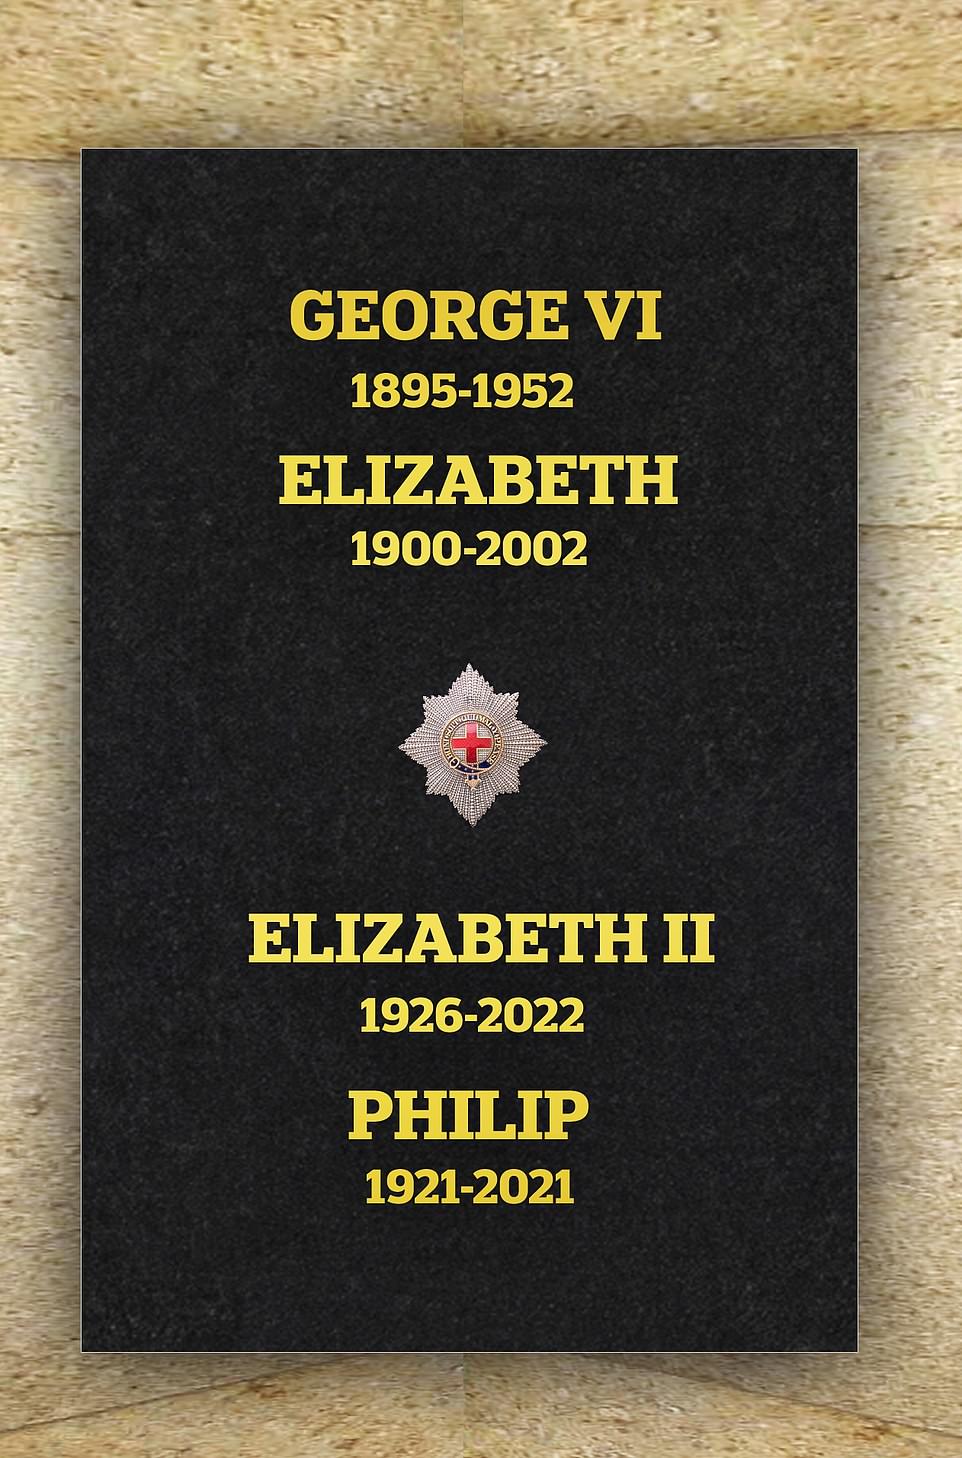 Een stenen plaat met de namen van koningin Elizabeth II, haar overleden echtgenoot prins Philip en haar ouders koning George VI en koningin Elizabeth is geïnstalleerd in de St George's Chapel in Windsor